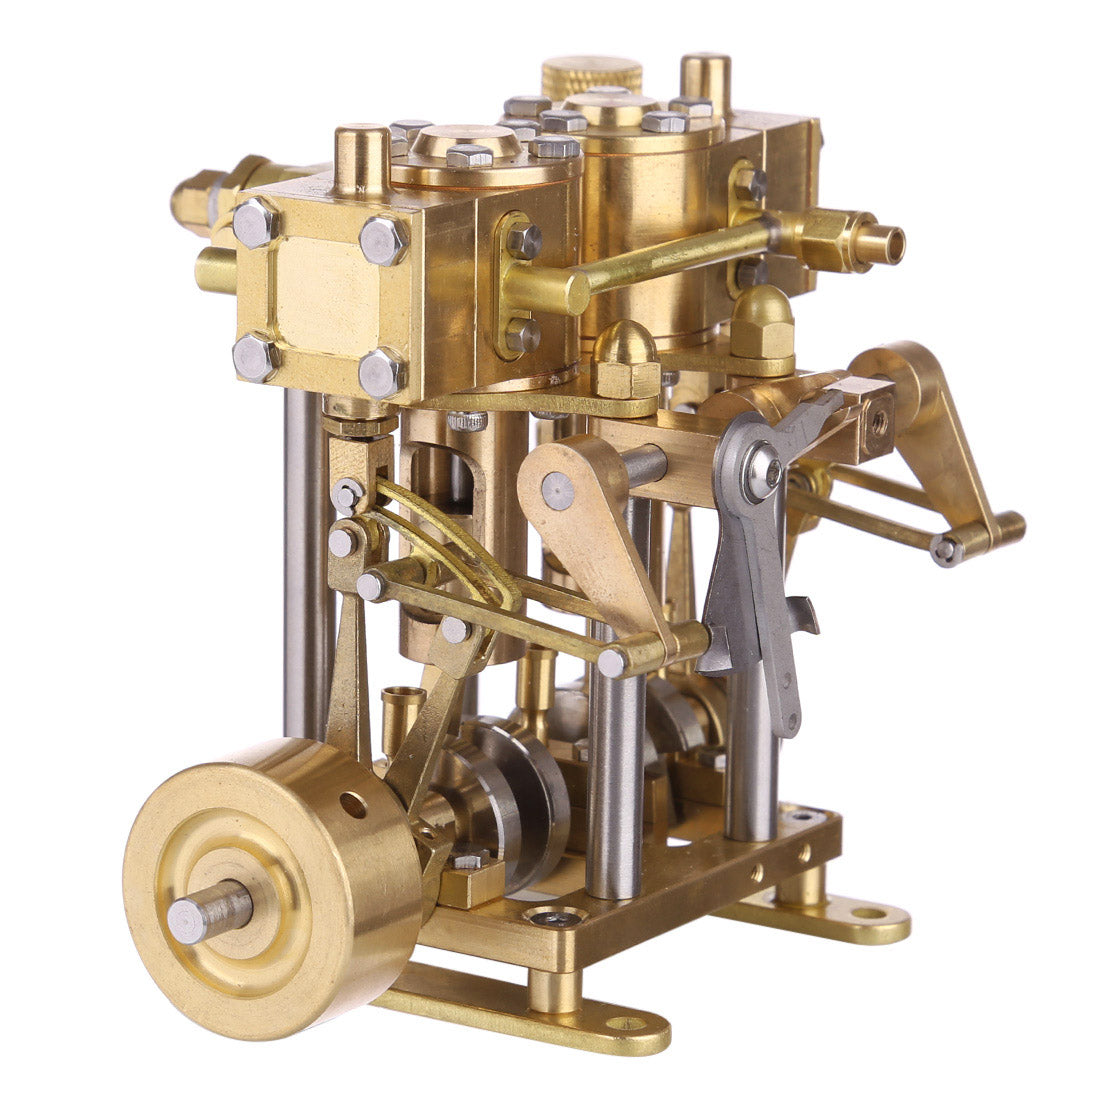 2 Cylinder Marine Steam Engine Reciprocating Steam Engine